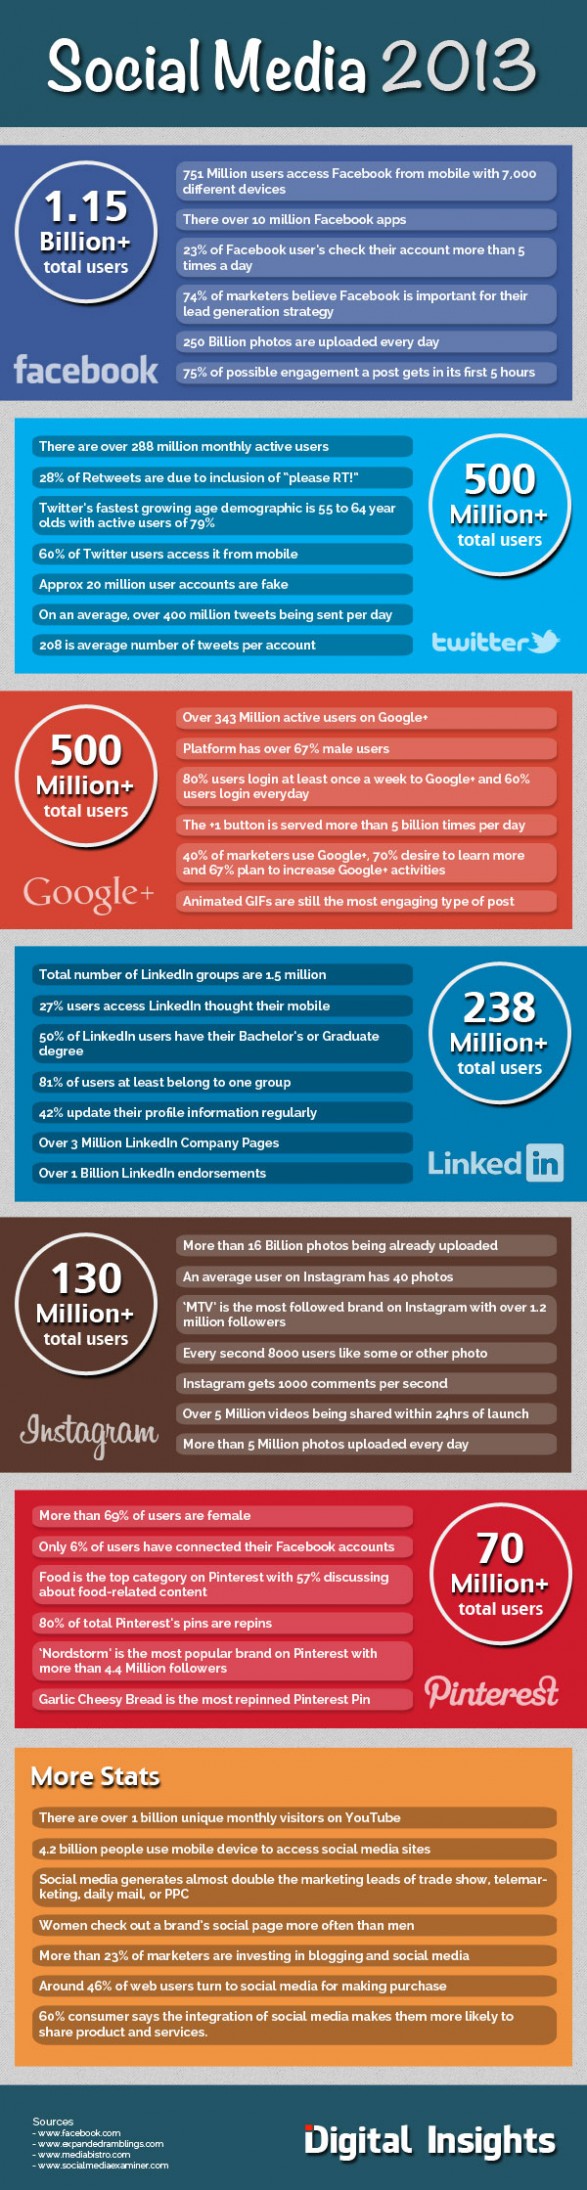 Social Media Facts 2013